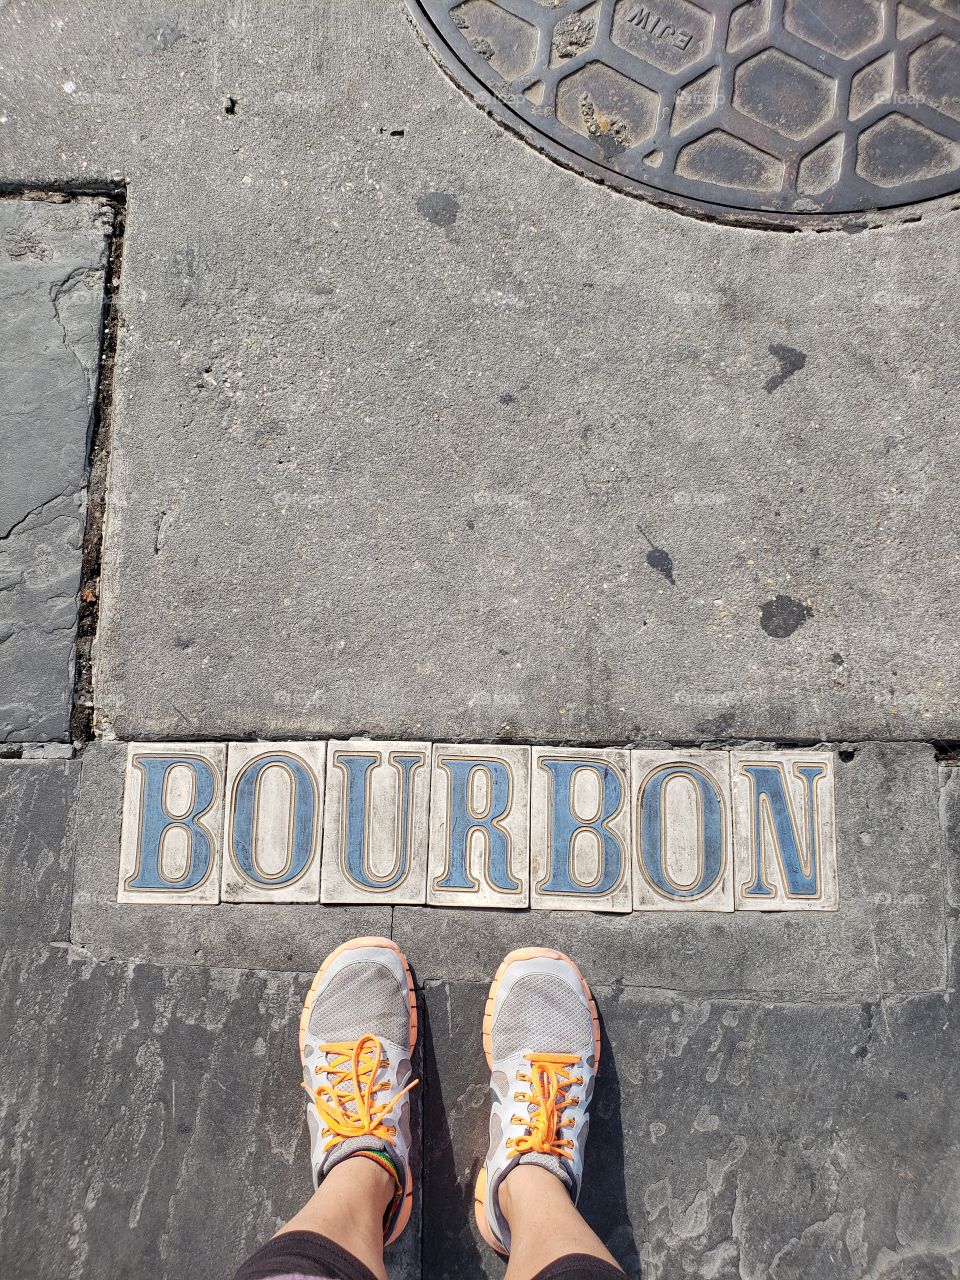 bourbon street art!